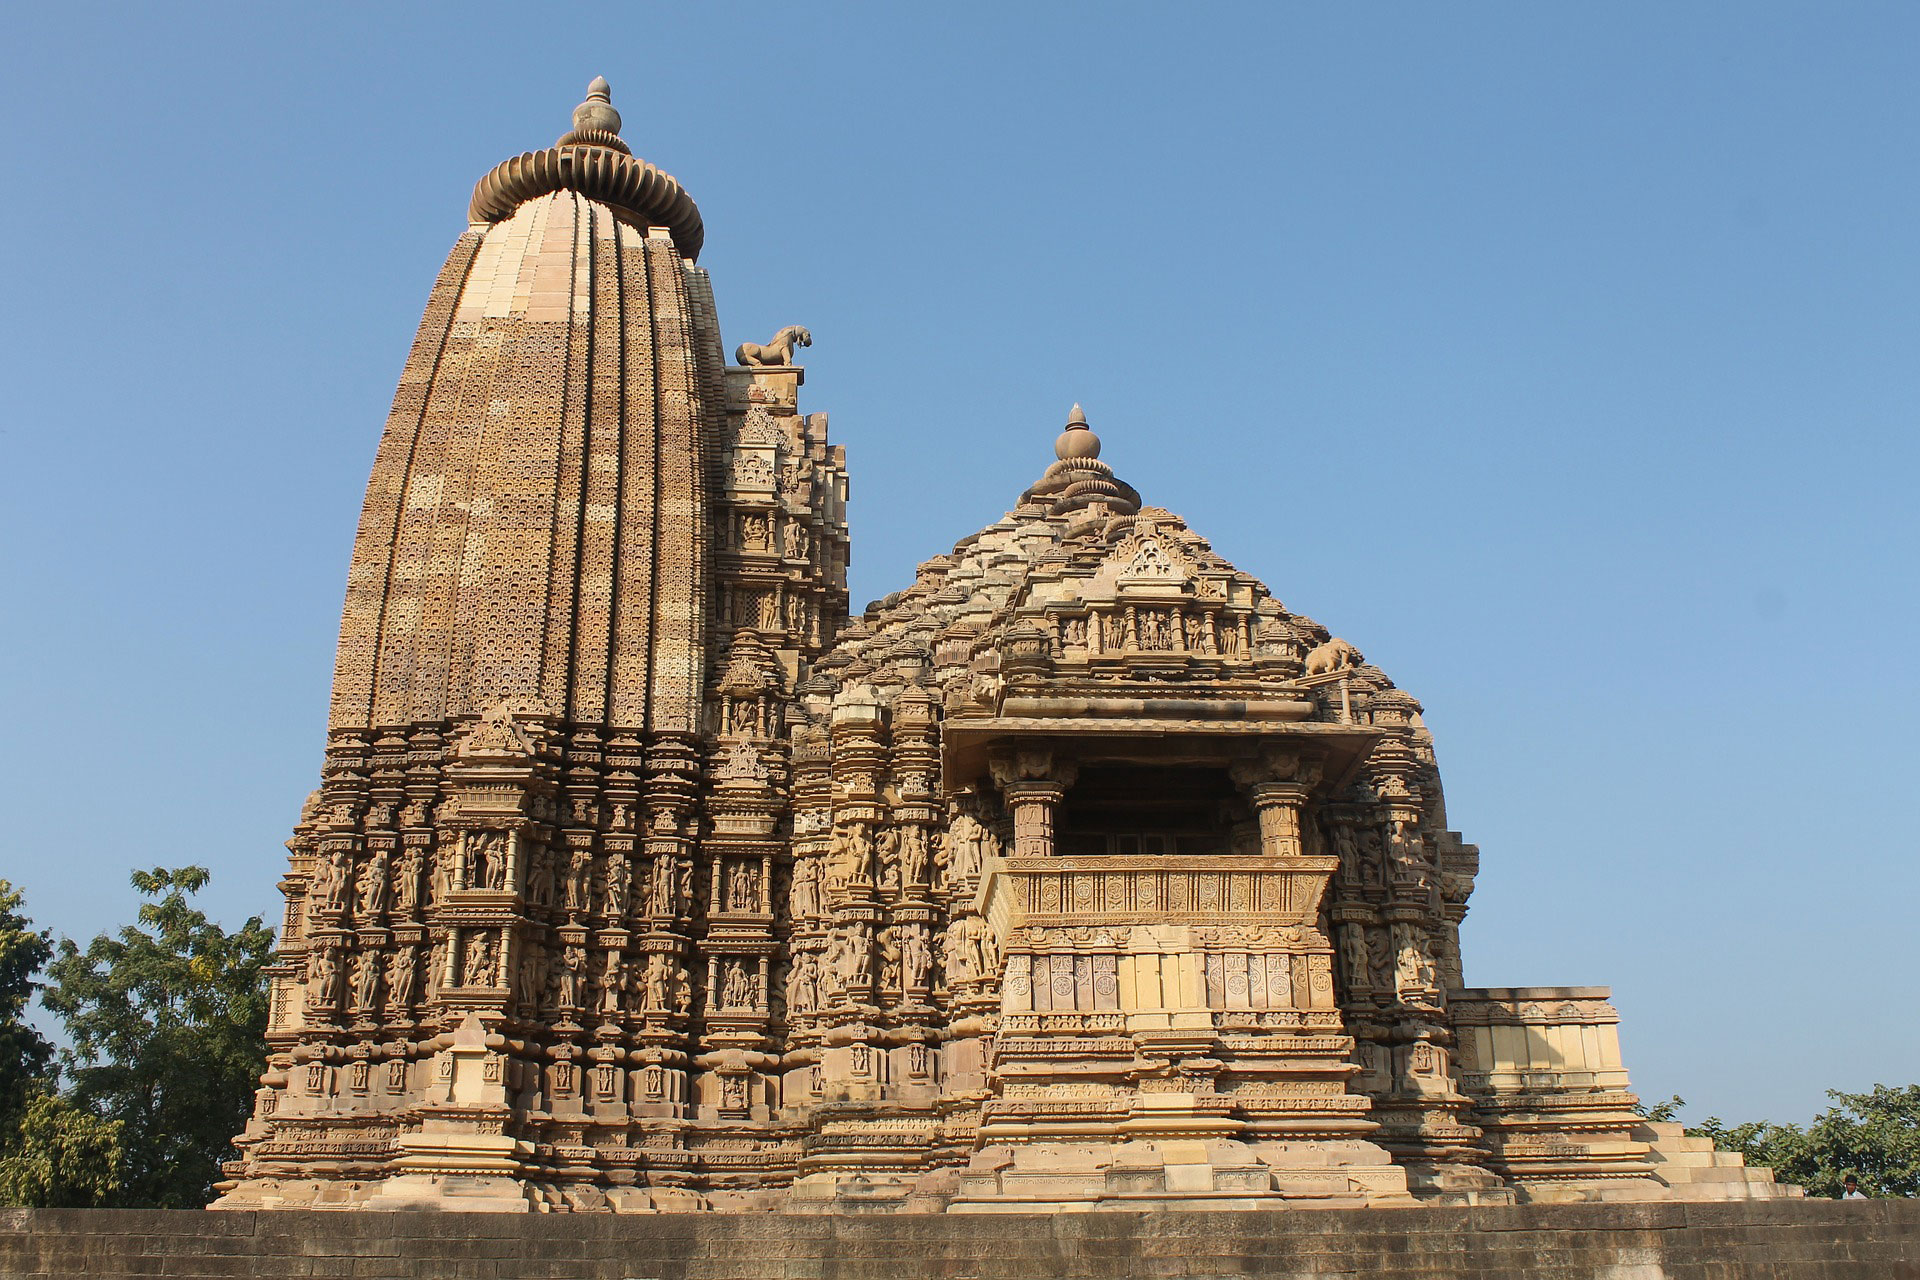 Храмы индии описание